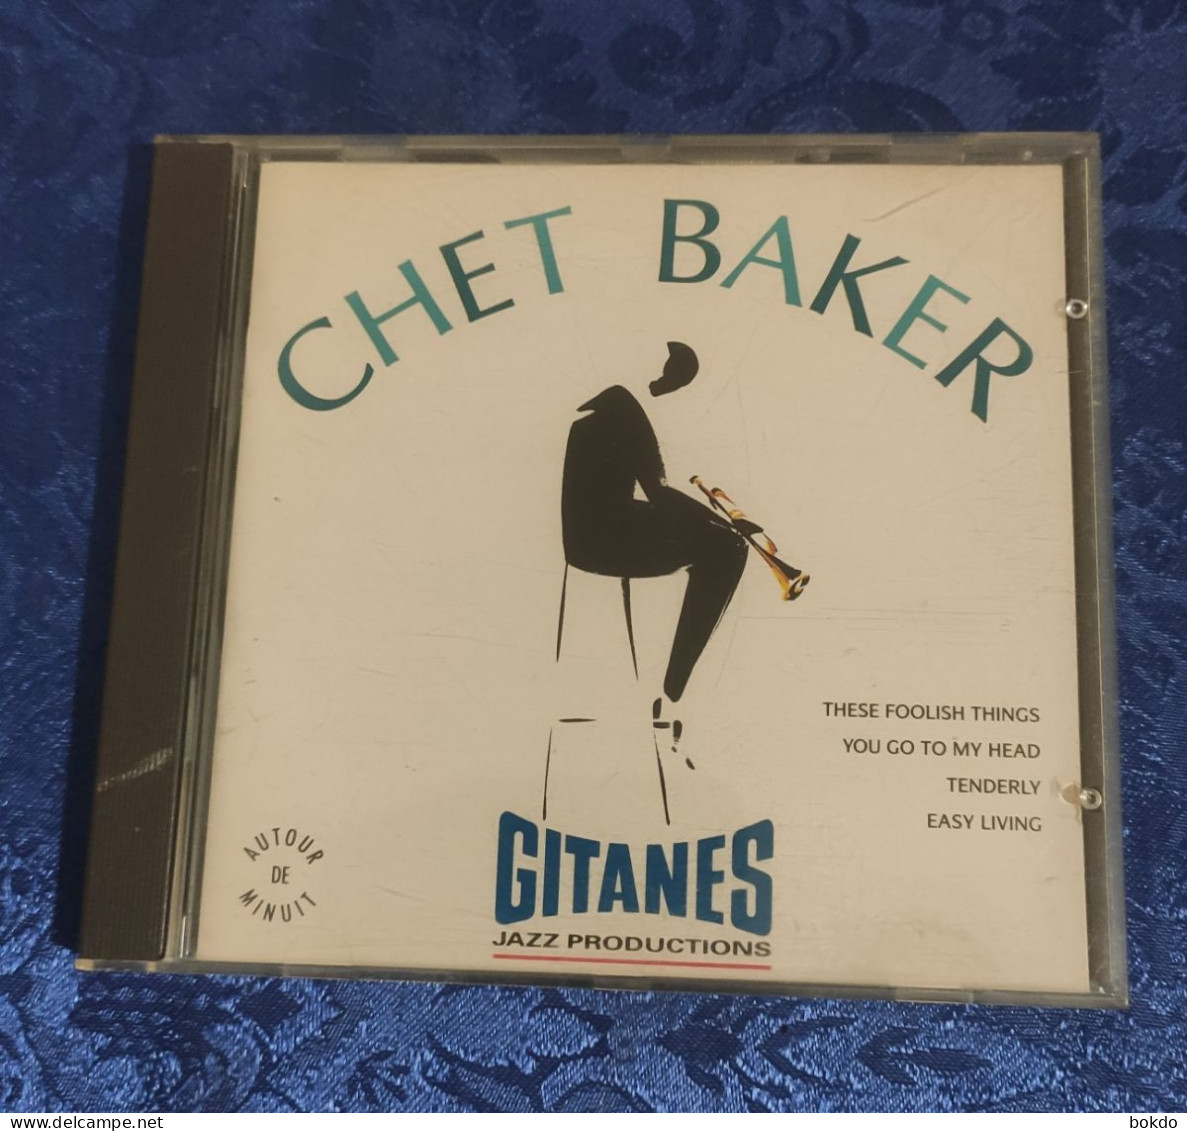 CHET BAKER - Gitanes - Jazz Productions - Altri - Inglese